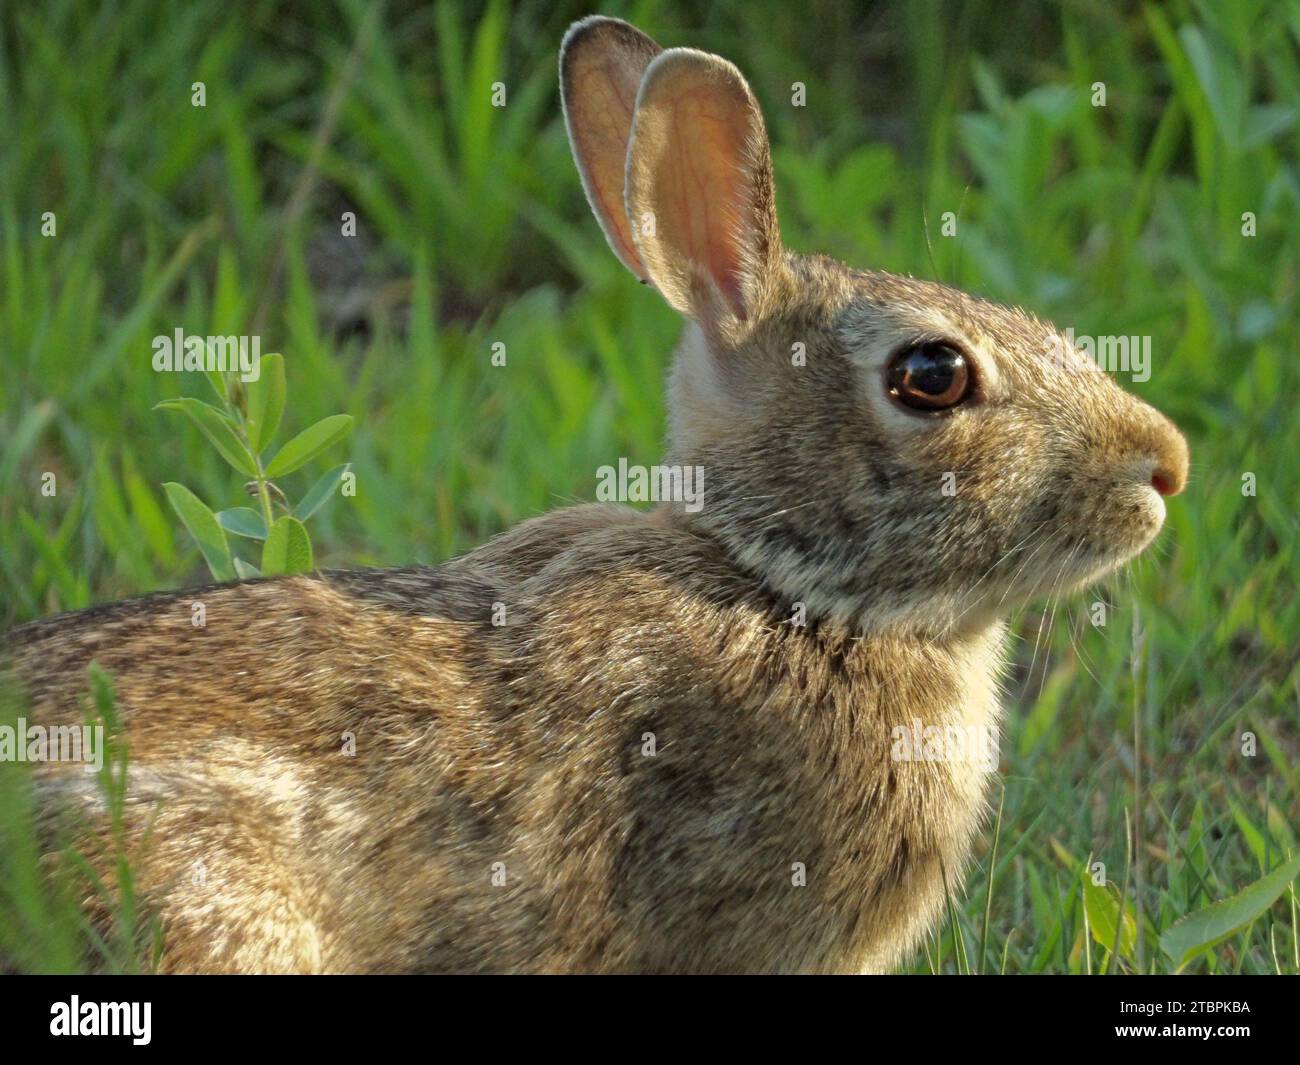 Ein Nahbild eines braunen und weißen Kaninchens in einem grasbewachsenen Gebiet, wahrscheinlich in einem Park Stockfoto